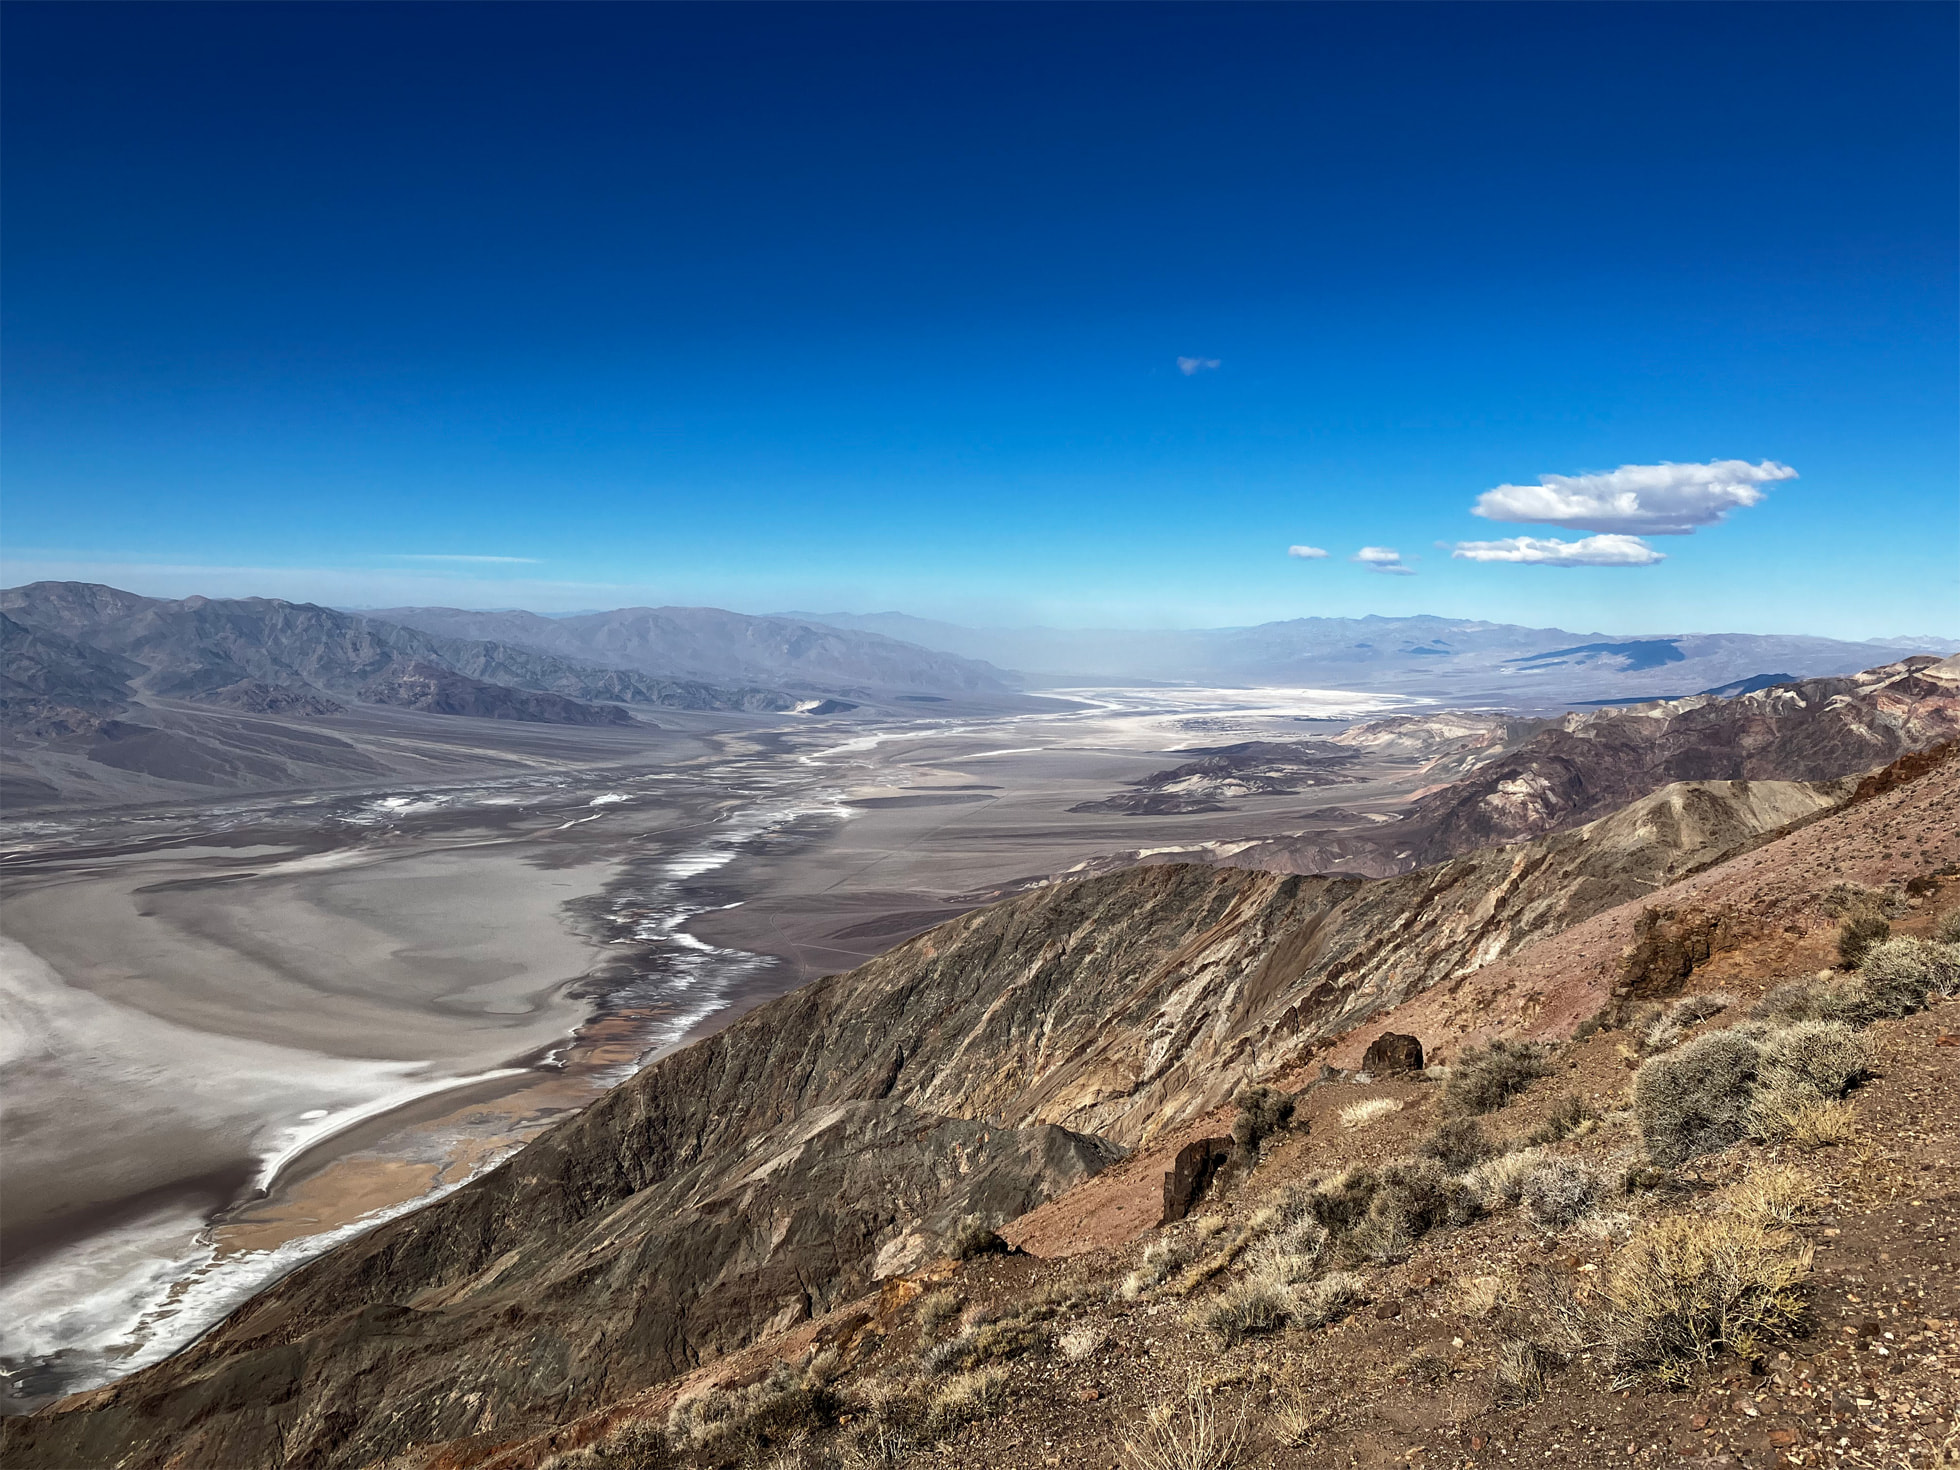 Gambar dari bahagian atas jalan pergunungan yang diambil dengan gaya fotografi pada iPhone SE